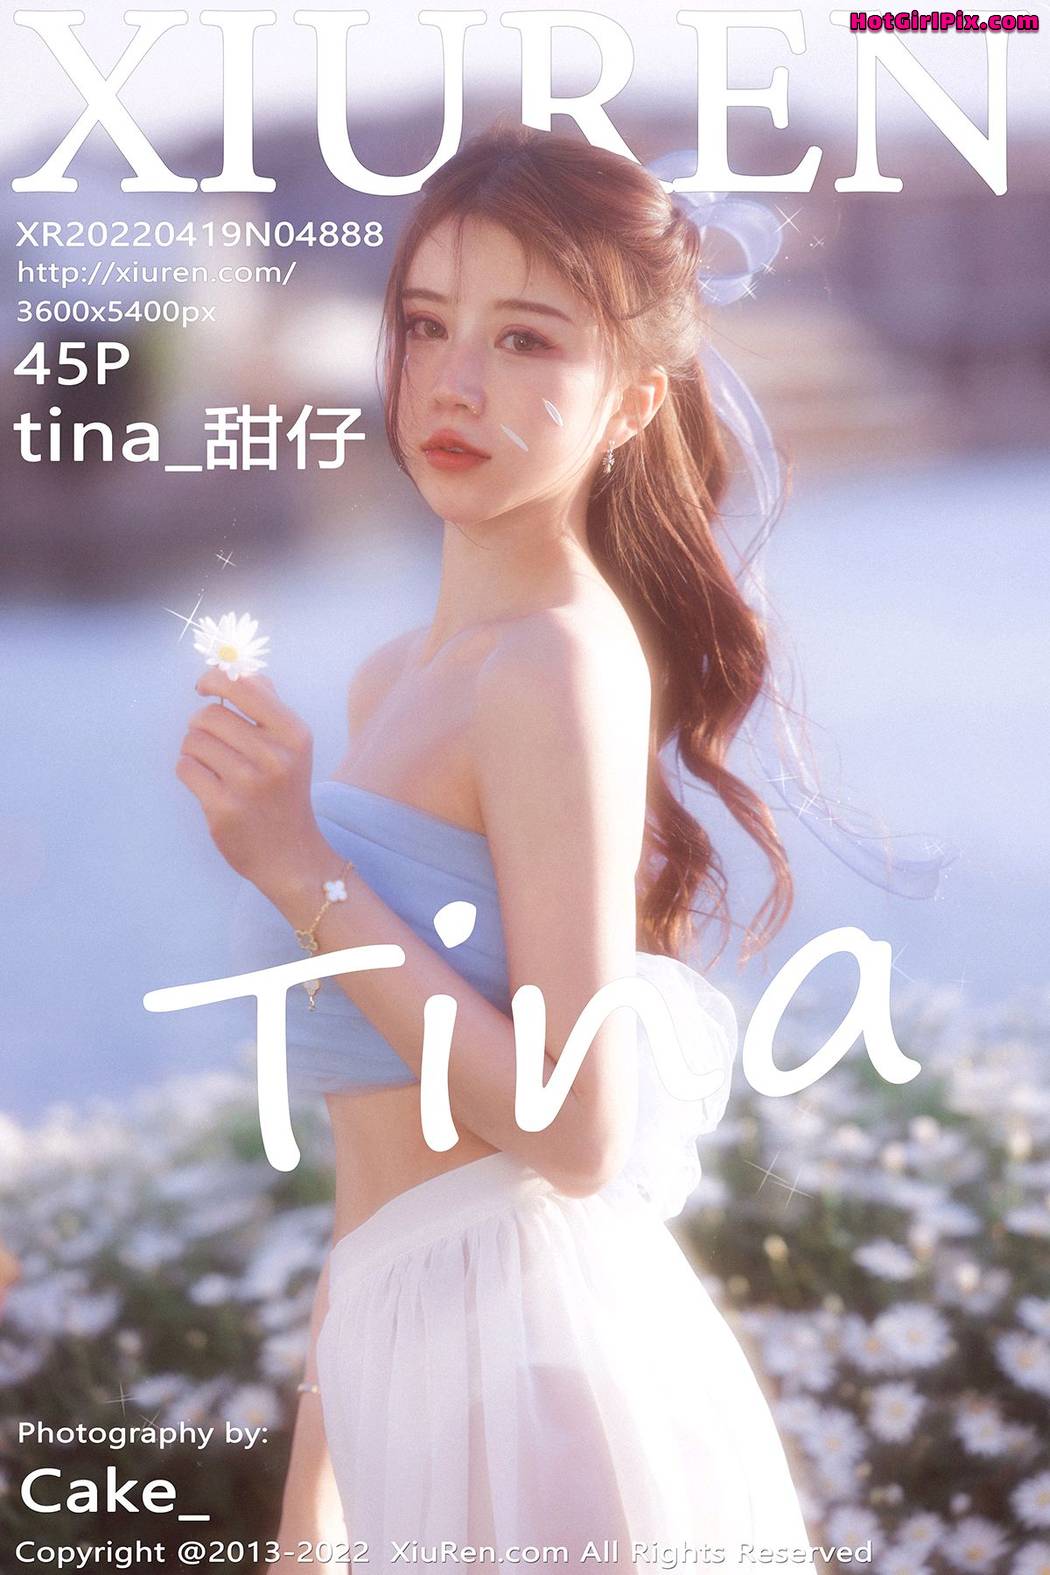 [XIUREN] No.4888 tina_甜仔 Cover Photo